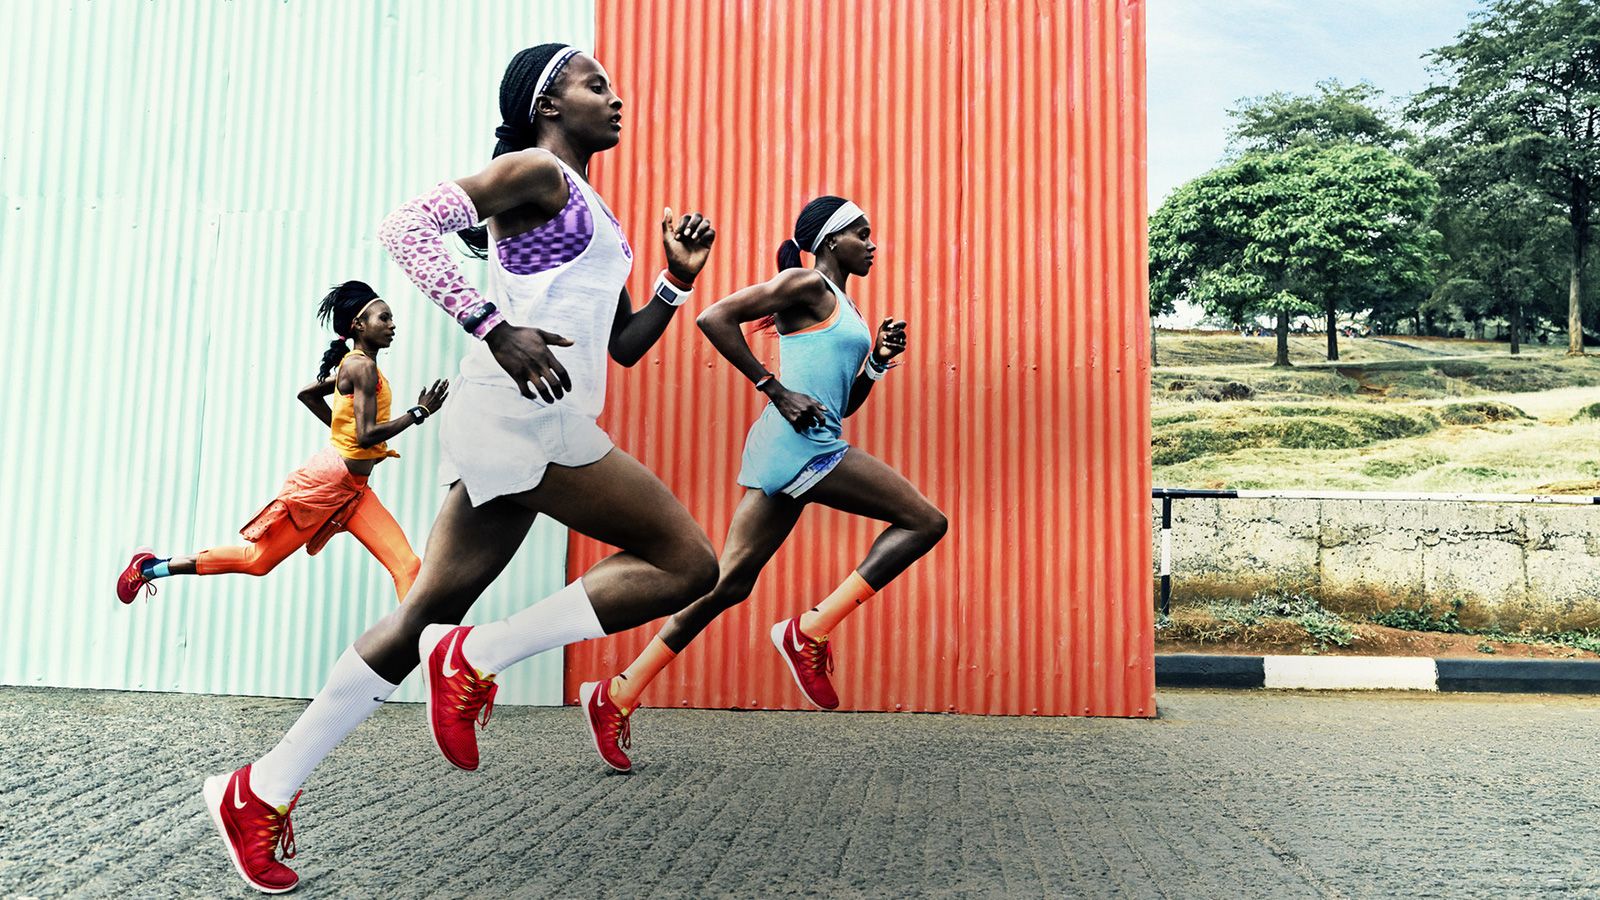 El cerebro de los corredores keniatas oxigena mejor